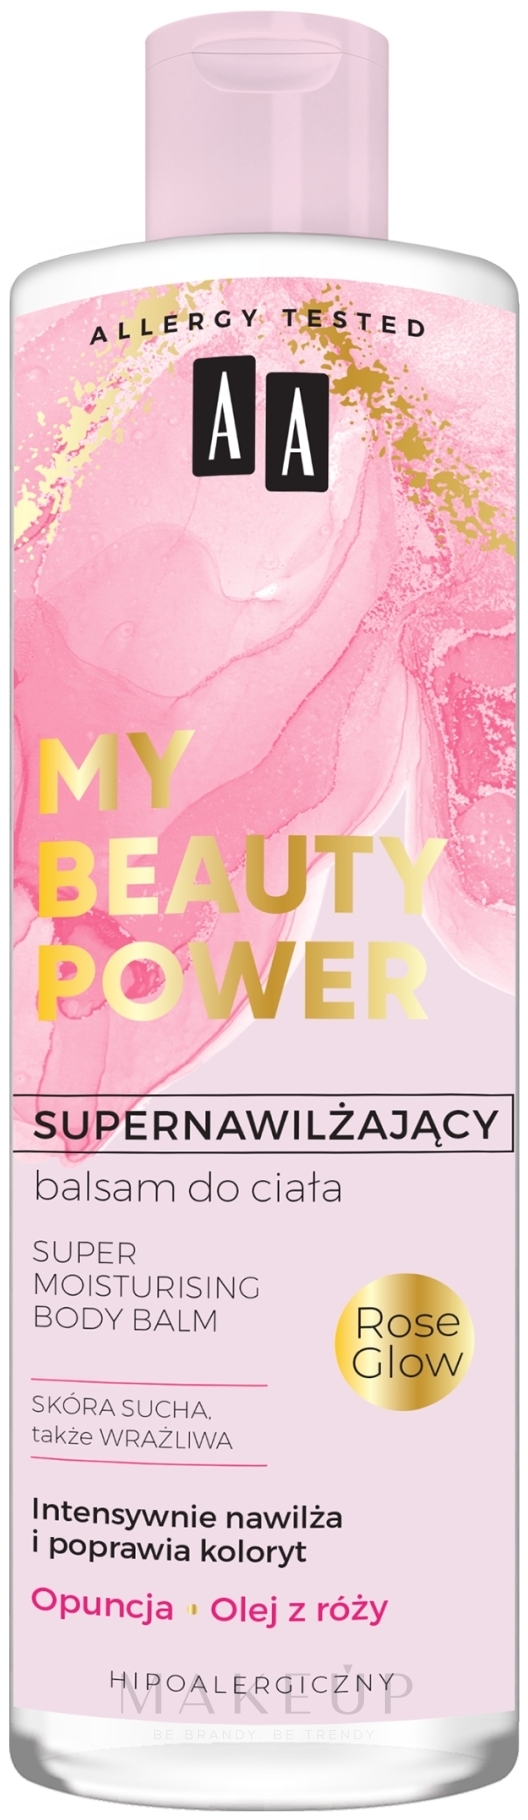 Intensiv feuchtigkeitsspendender Körperbalsam mit Feigenkaktus und Rosenöl - AA My Beauty Power Super Moisturizing Body Balm — Bild 400 ml